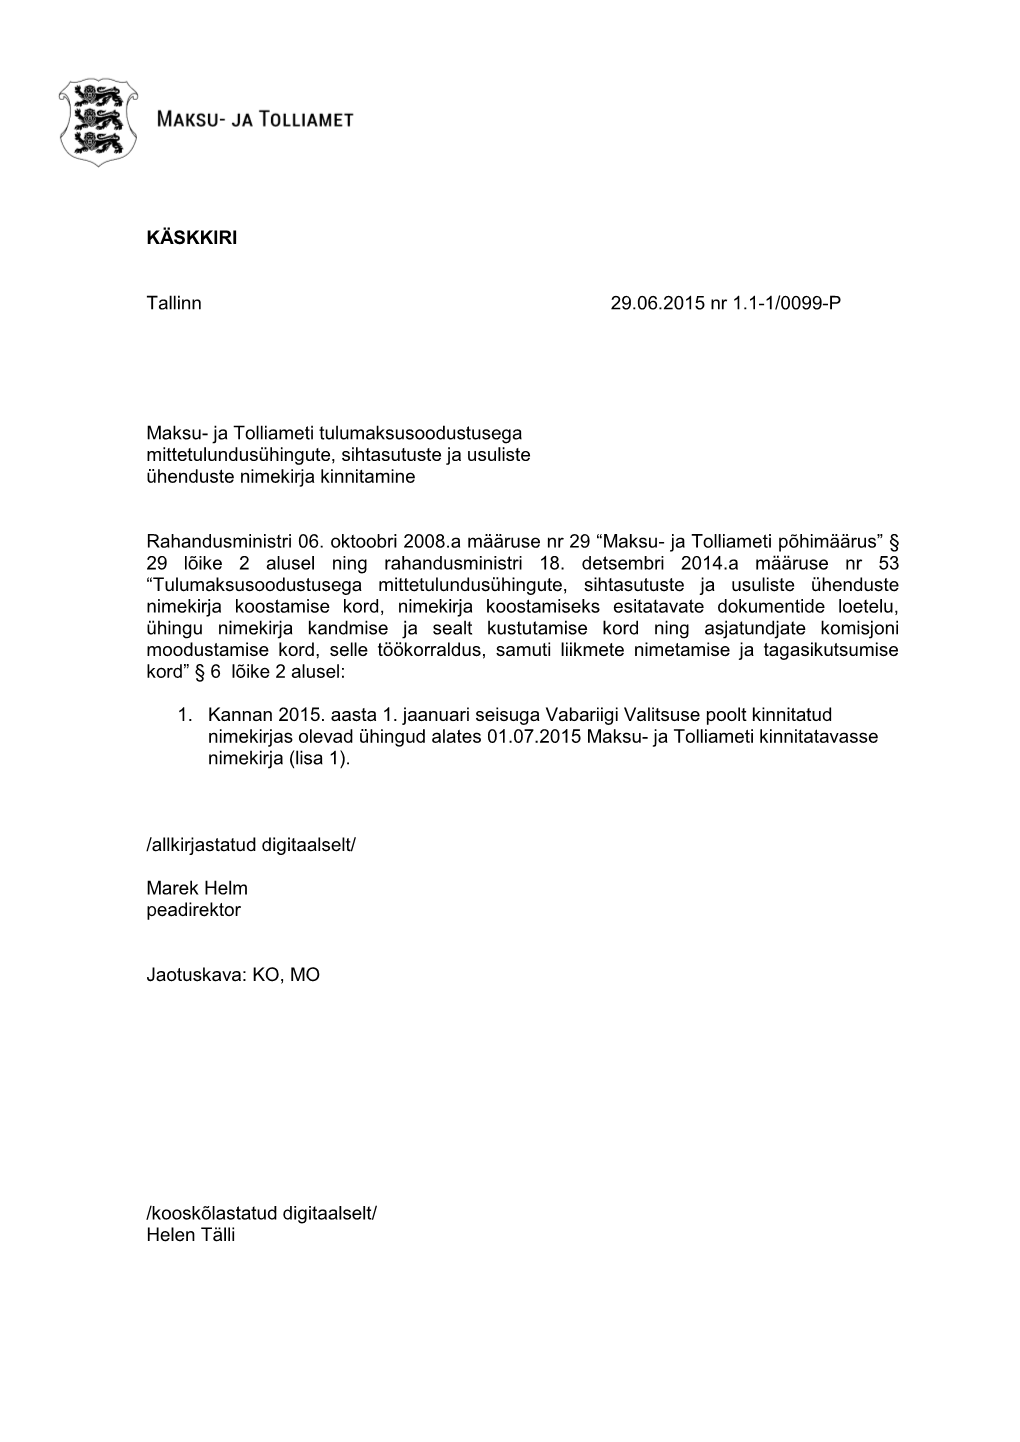 KÄSKKIRI Tallinn 29.06.2015 Nr 1.1-1/0099-P Maksu- Ja Tolliameti Tulumaksusoodustusega Mittetulundusühingute, Sihtasutus